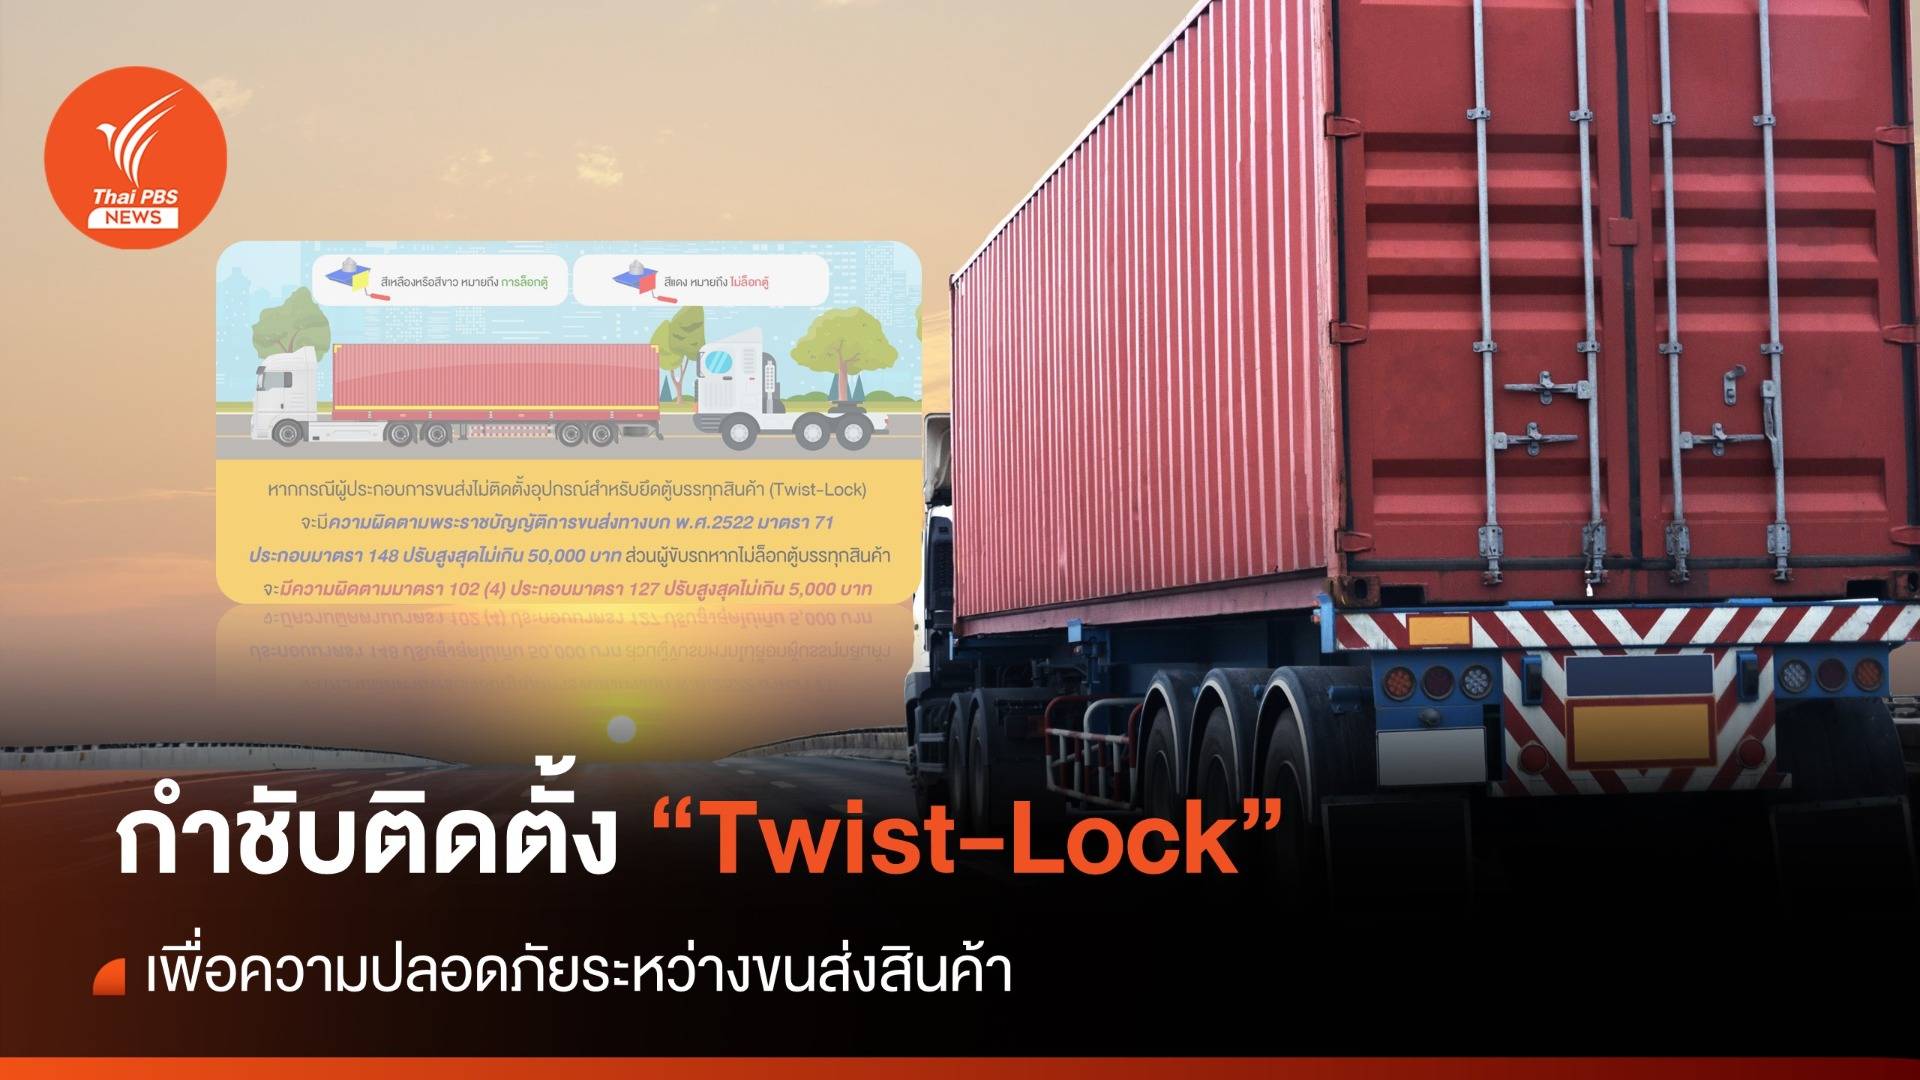 ขนส่งฯ เข้มรถบรรทุกสินค้าติดตั้ง "Twist-Lock" ตู้คอนเทนเนอร์